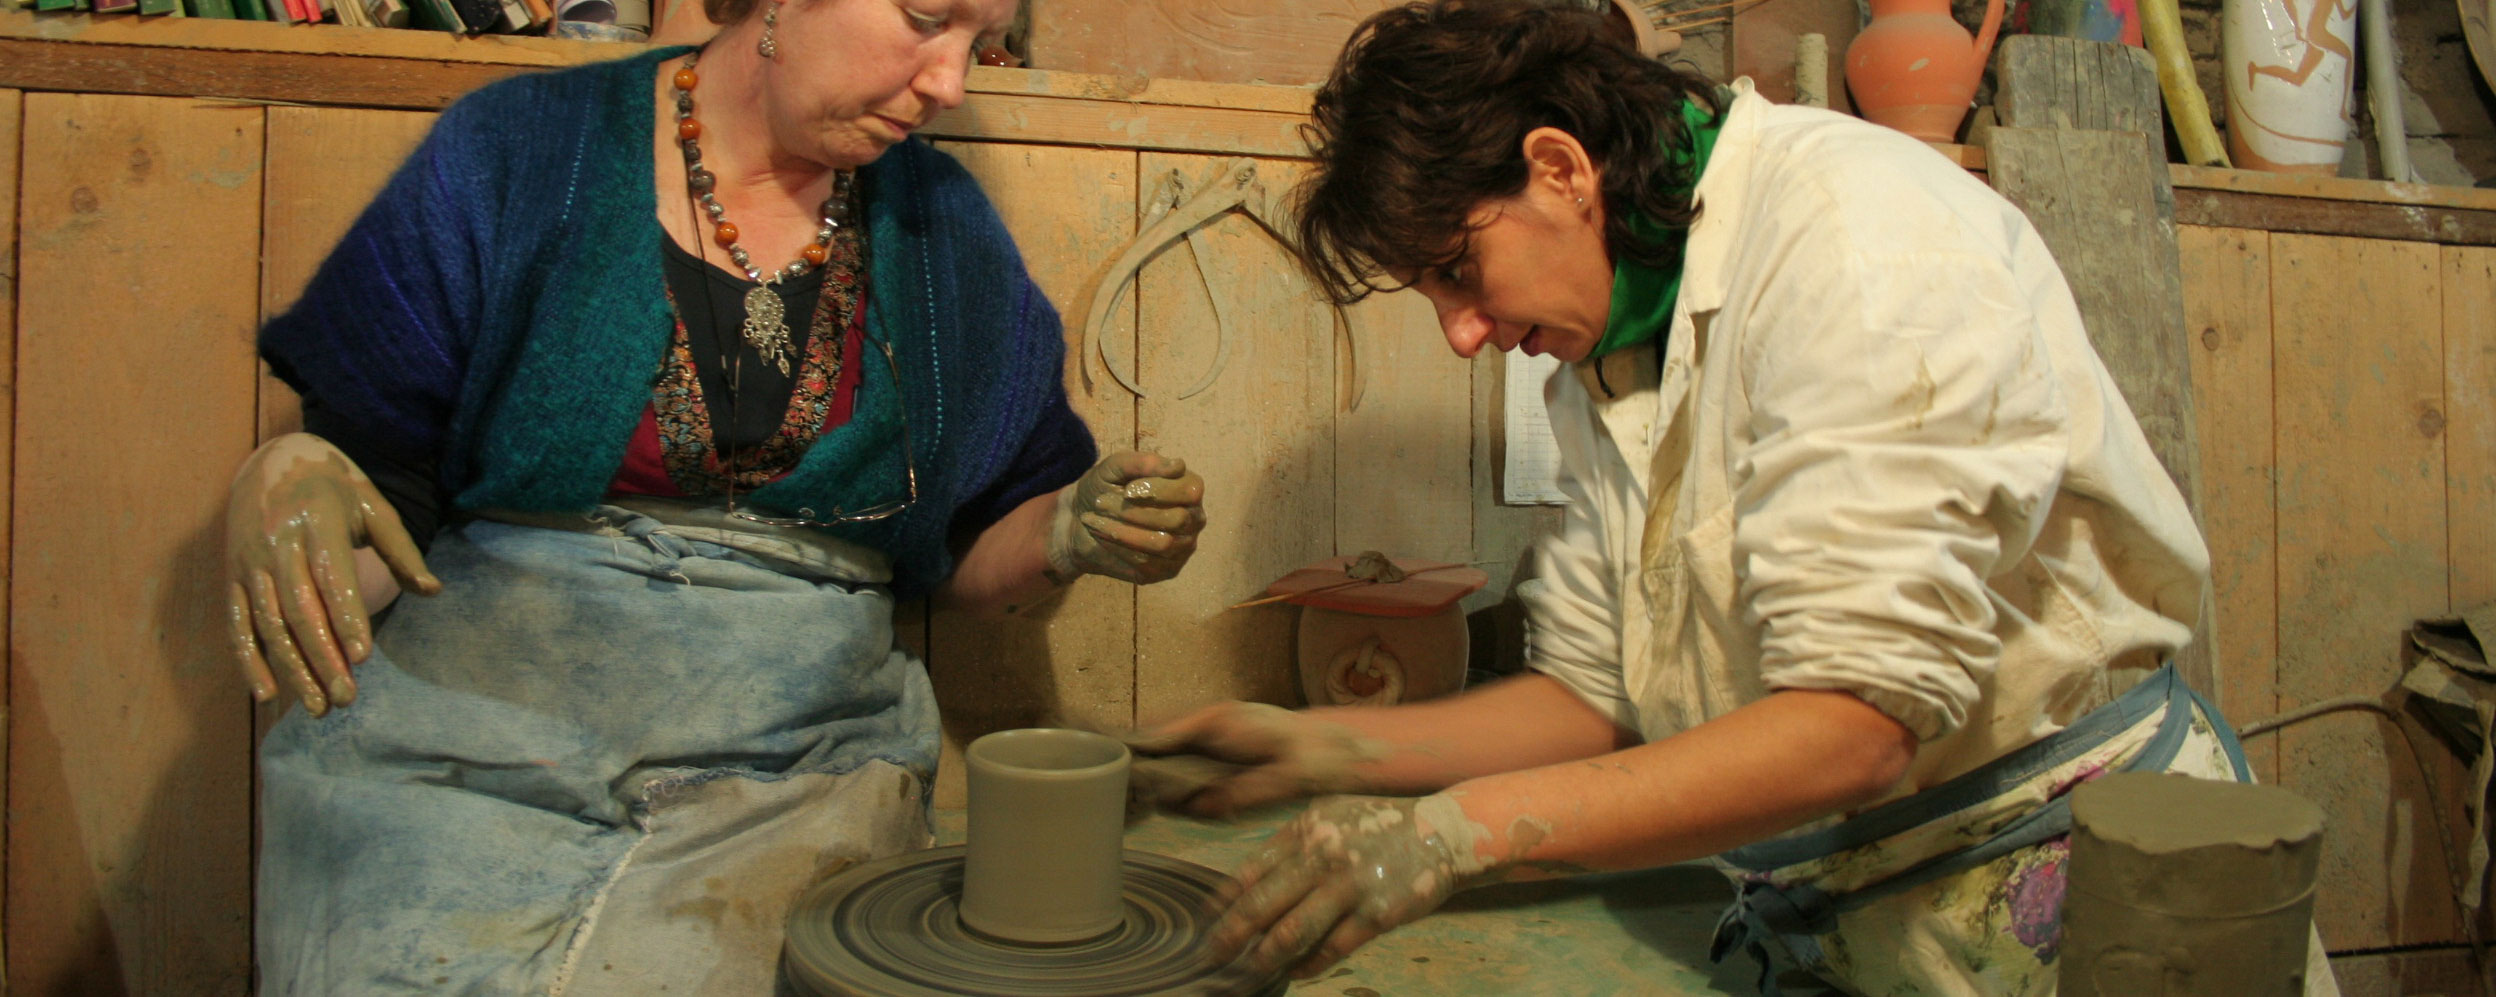 Italian pottery classes in Italy